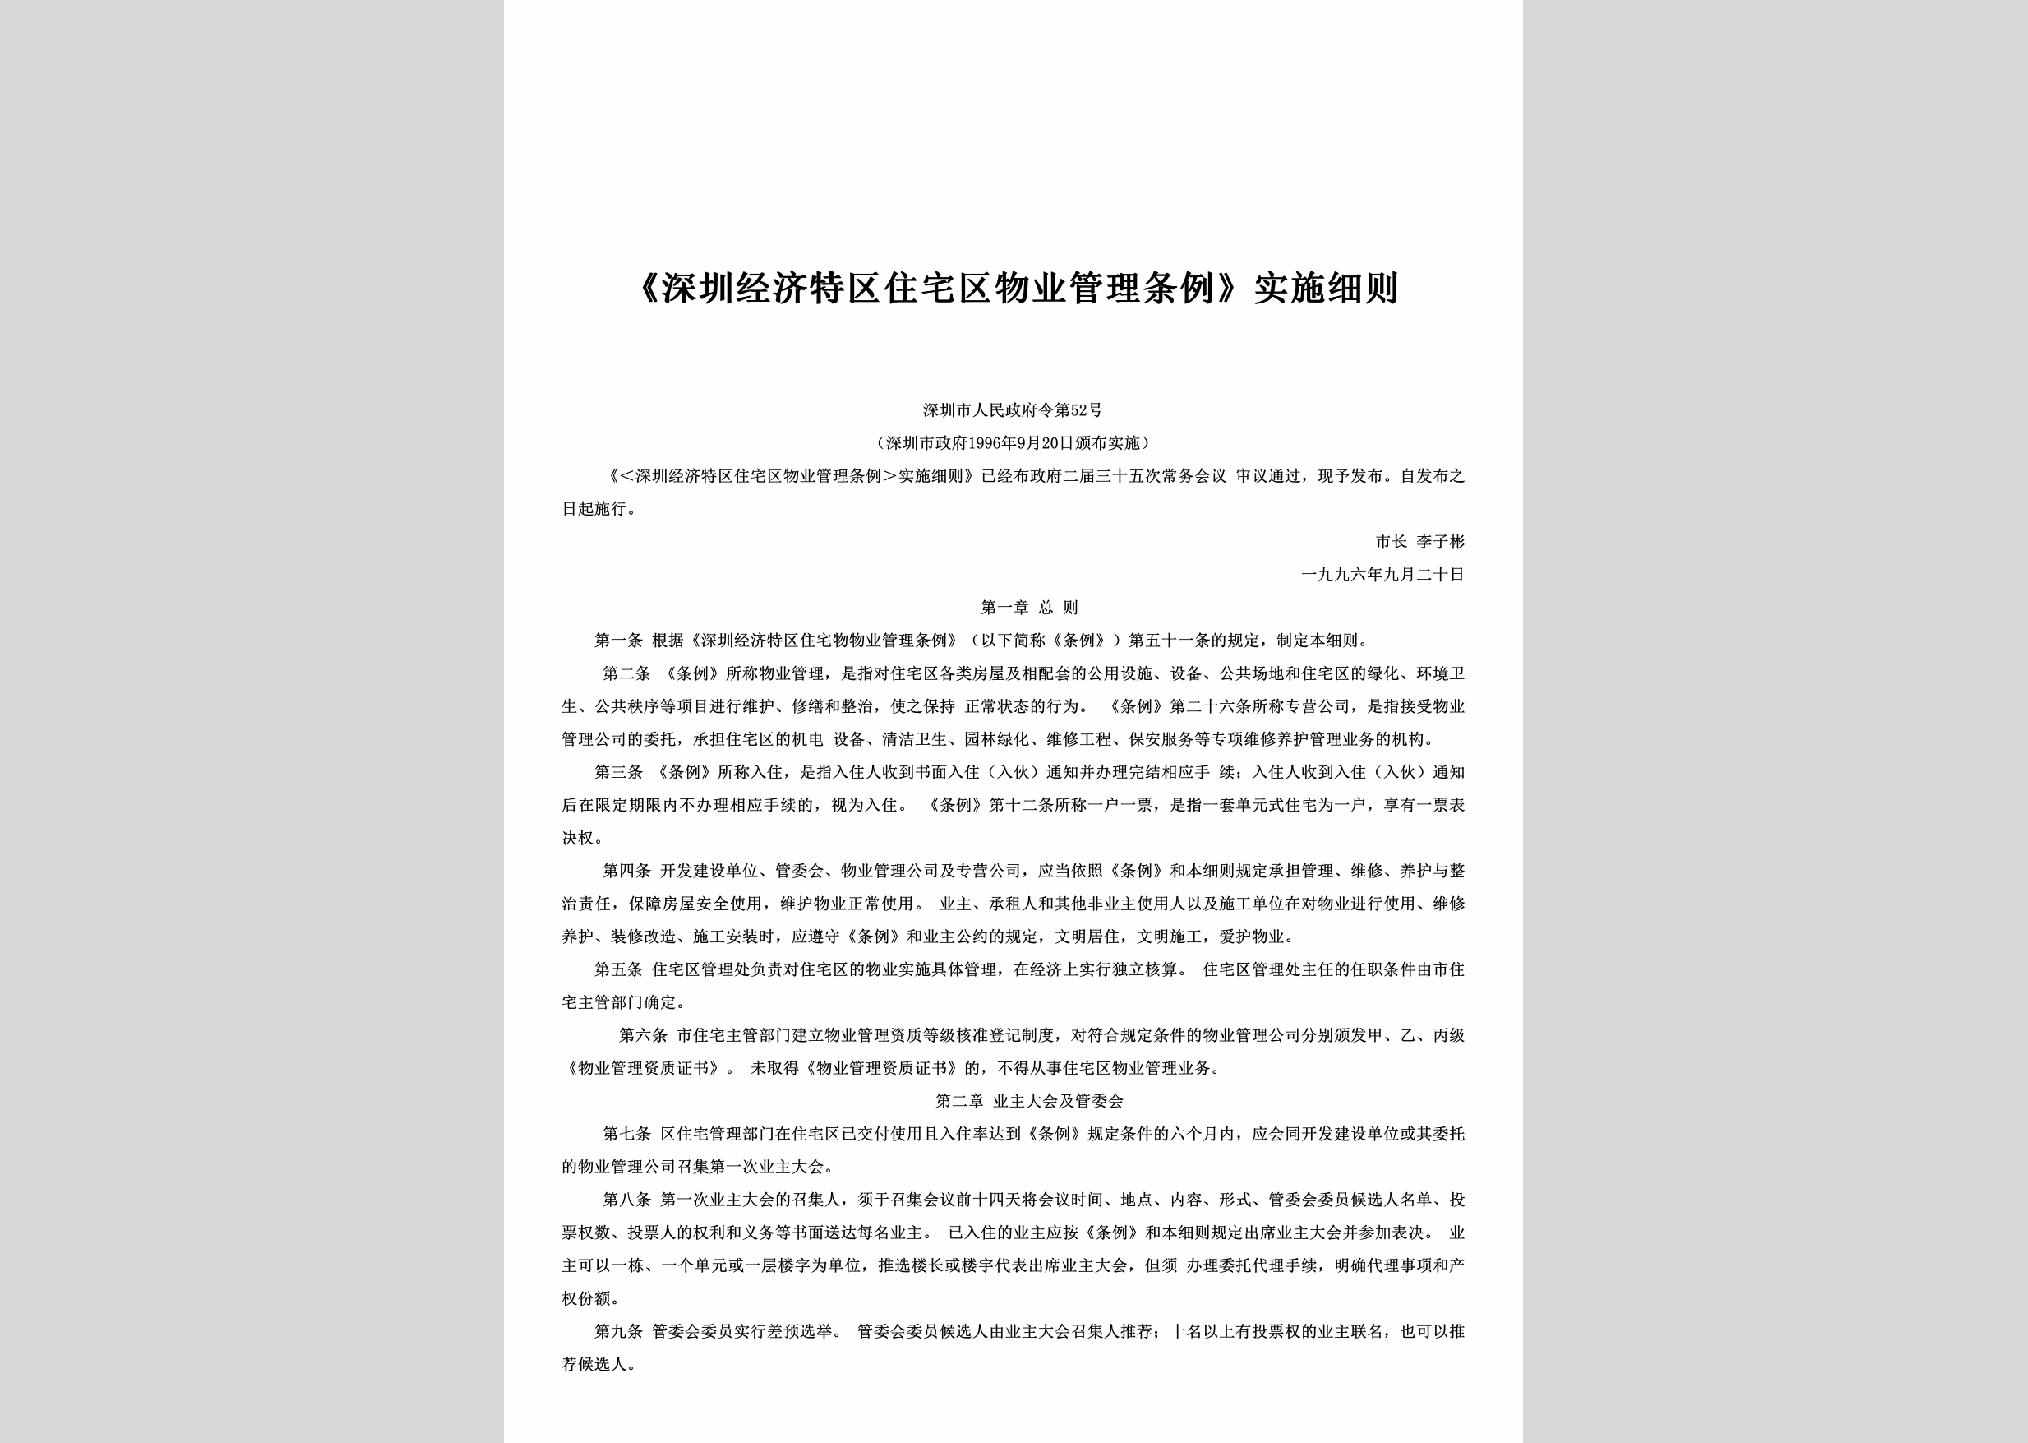 深圳市人民政府令第52号：《深圳经济特区住宅区物业管理条例》实施细则